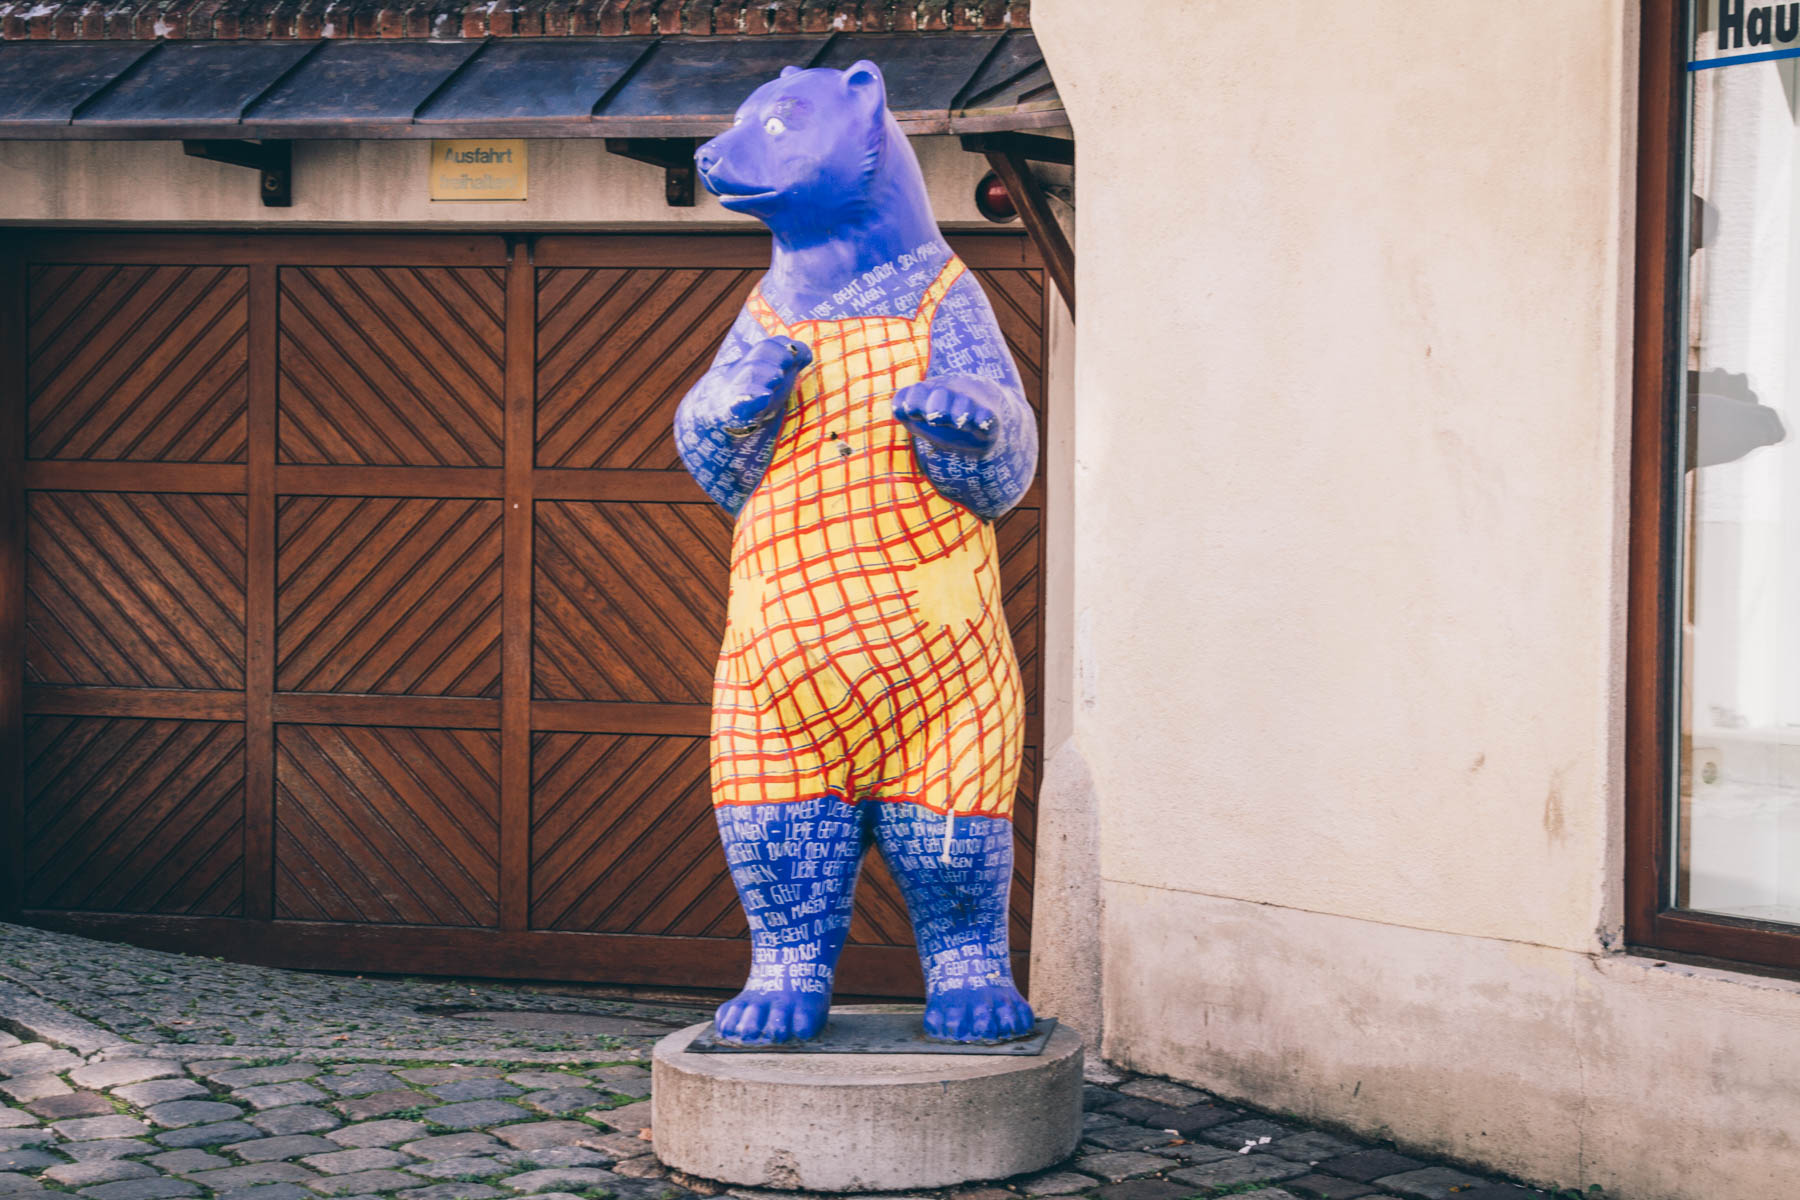 Ein treuer Begleiter beim Rundgang durch die Straßen von Freising: das Wappentier, der Bär. – ©wunderland media GmbH